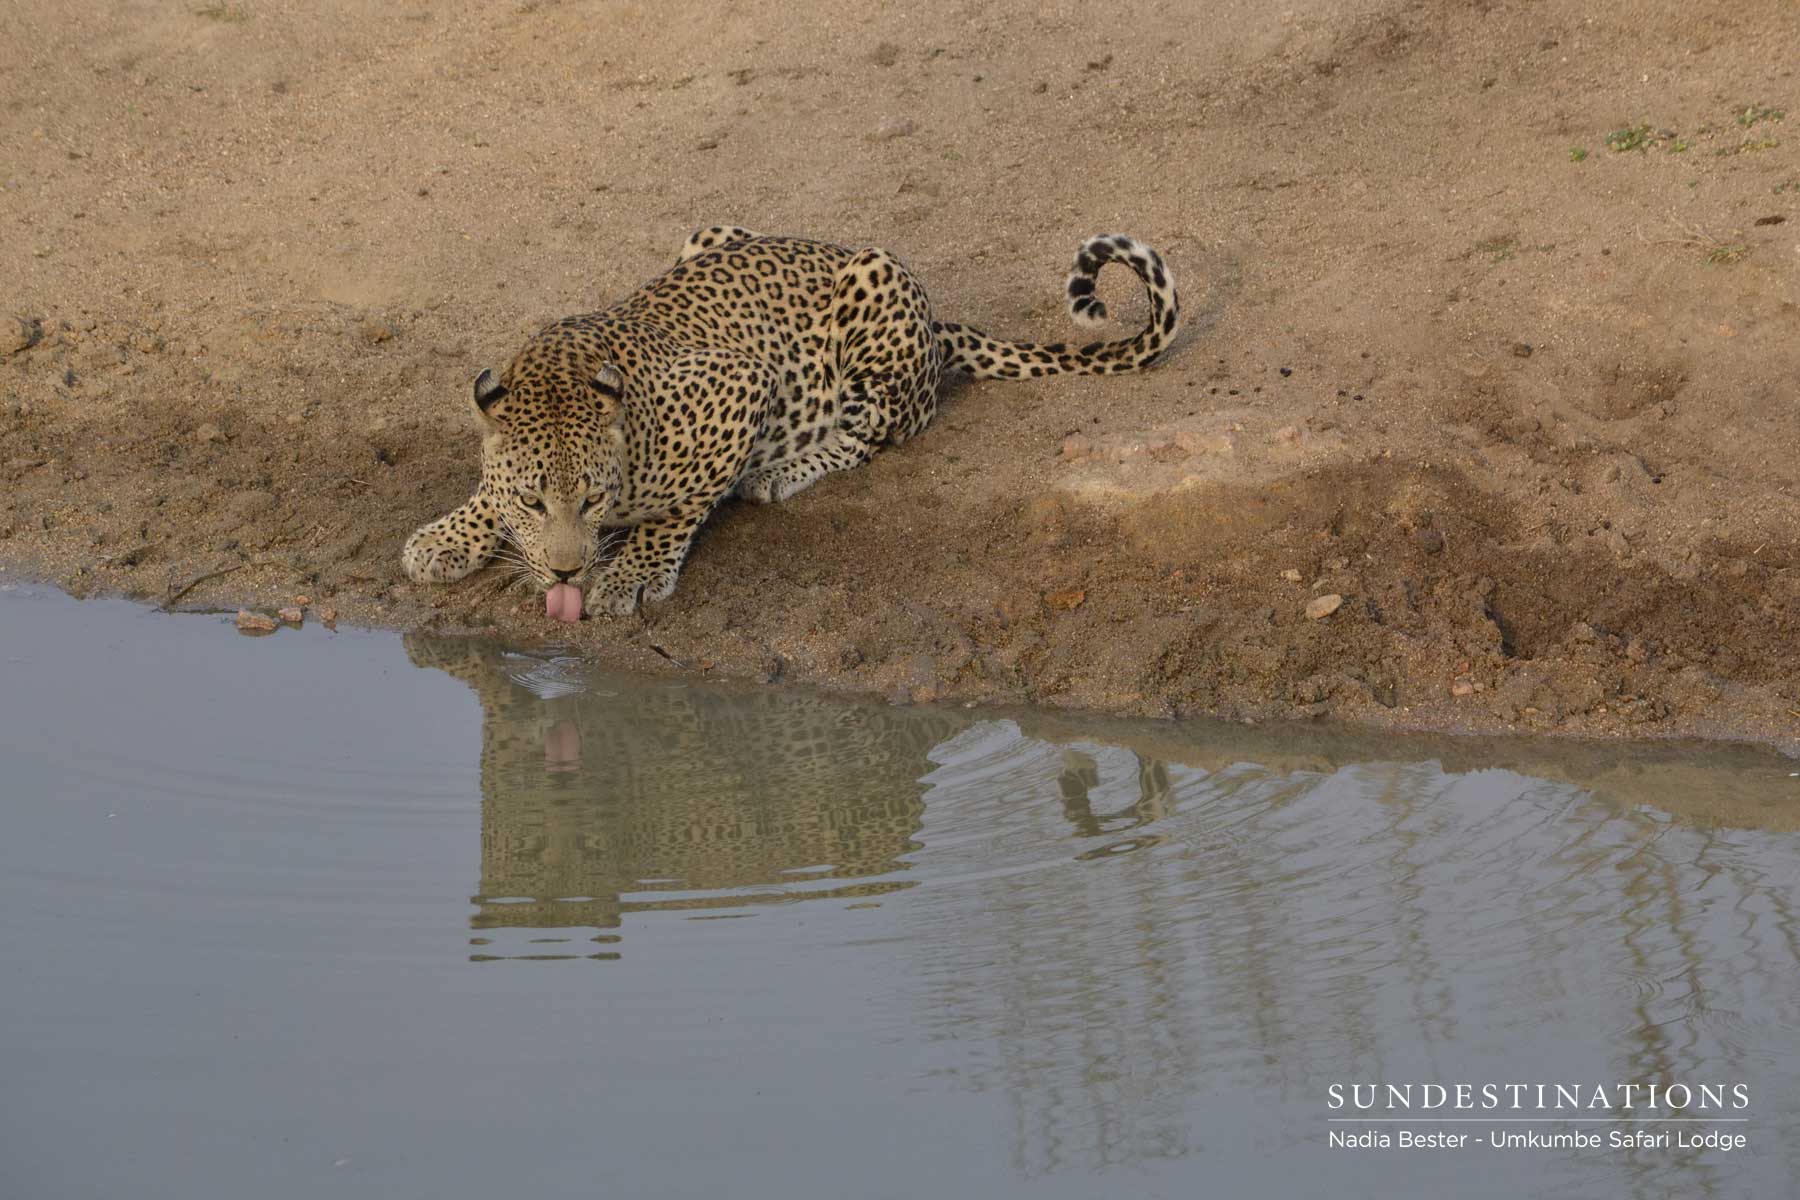 Sabi Sand Leopard Drinking